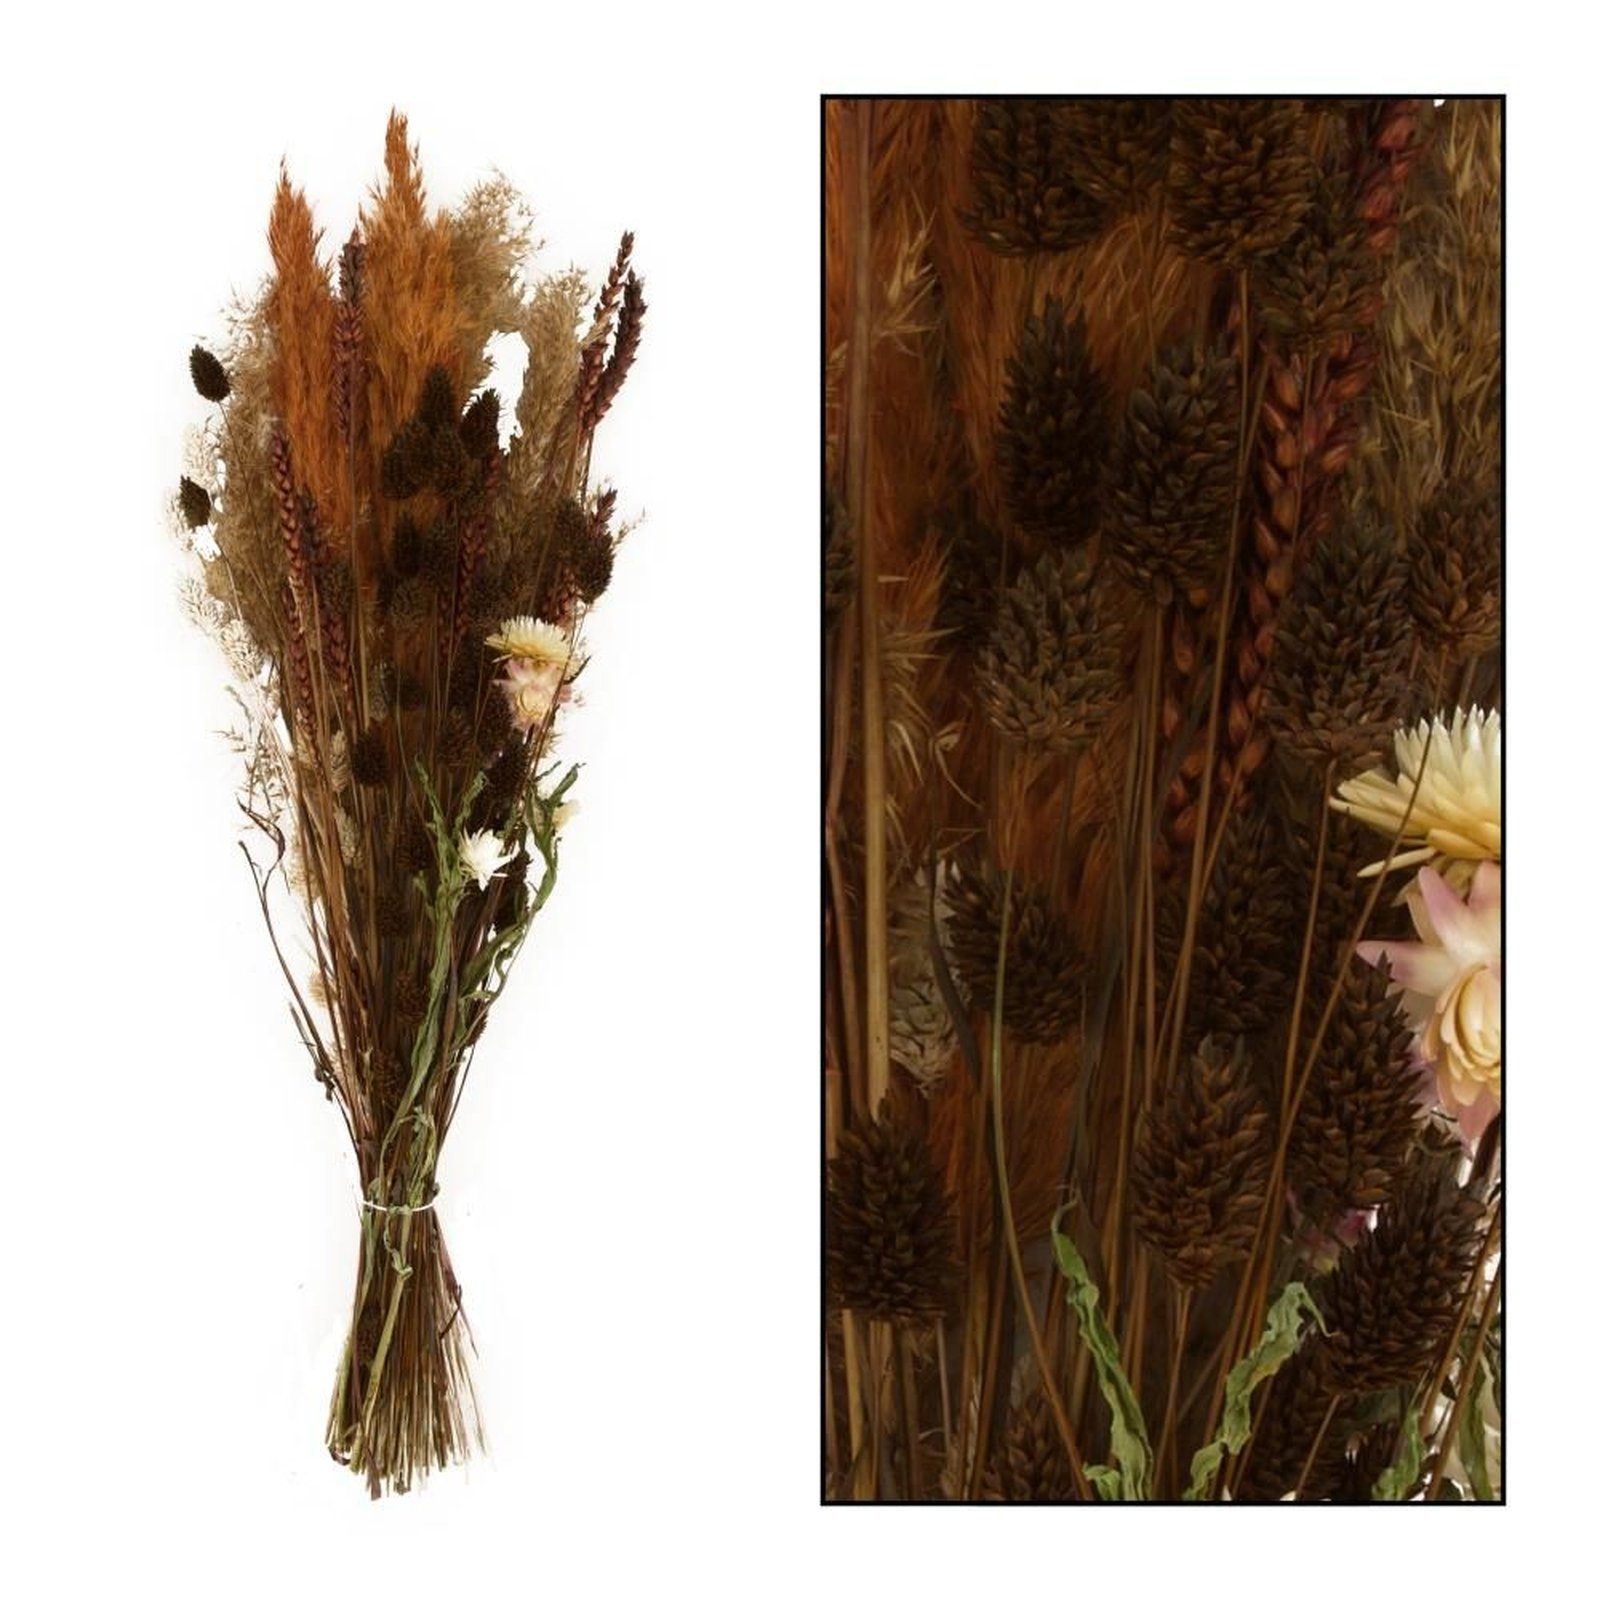 Getrockneter braun flower Trockenblume - DIJK bouquet, Blumenstrauß dried